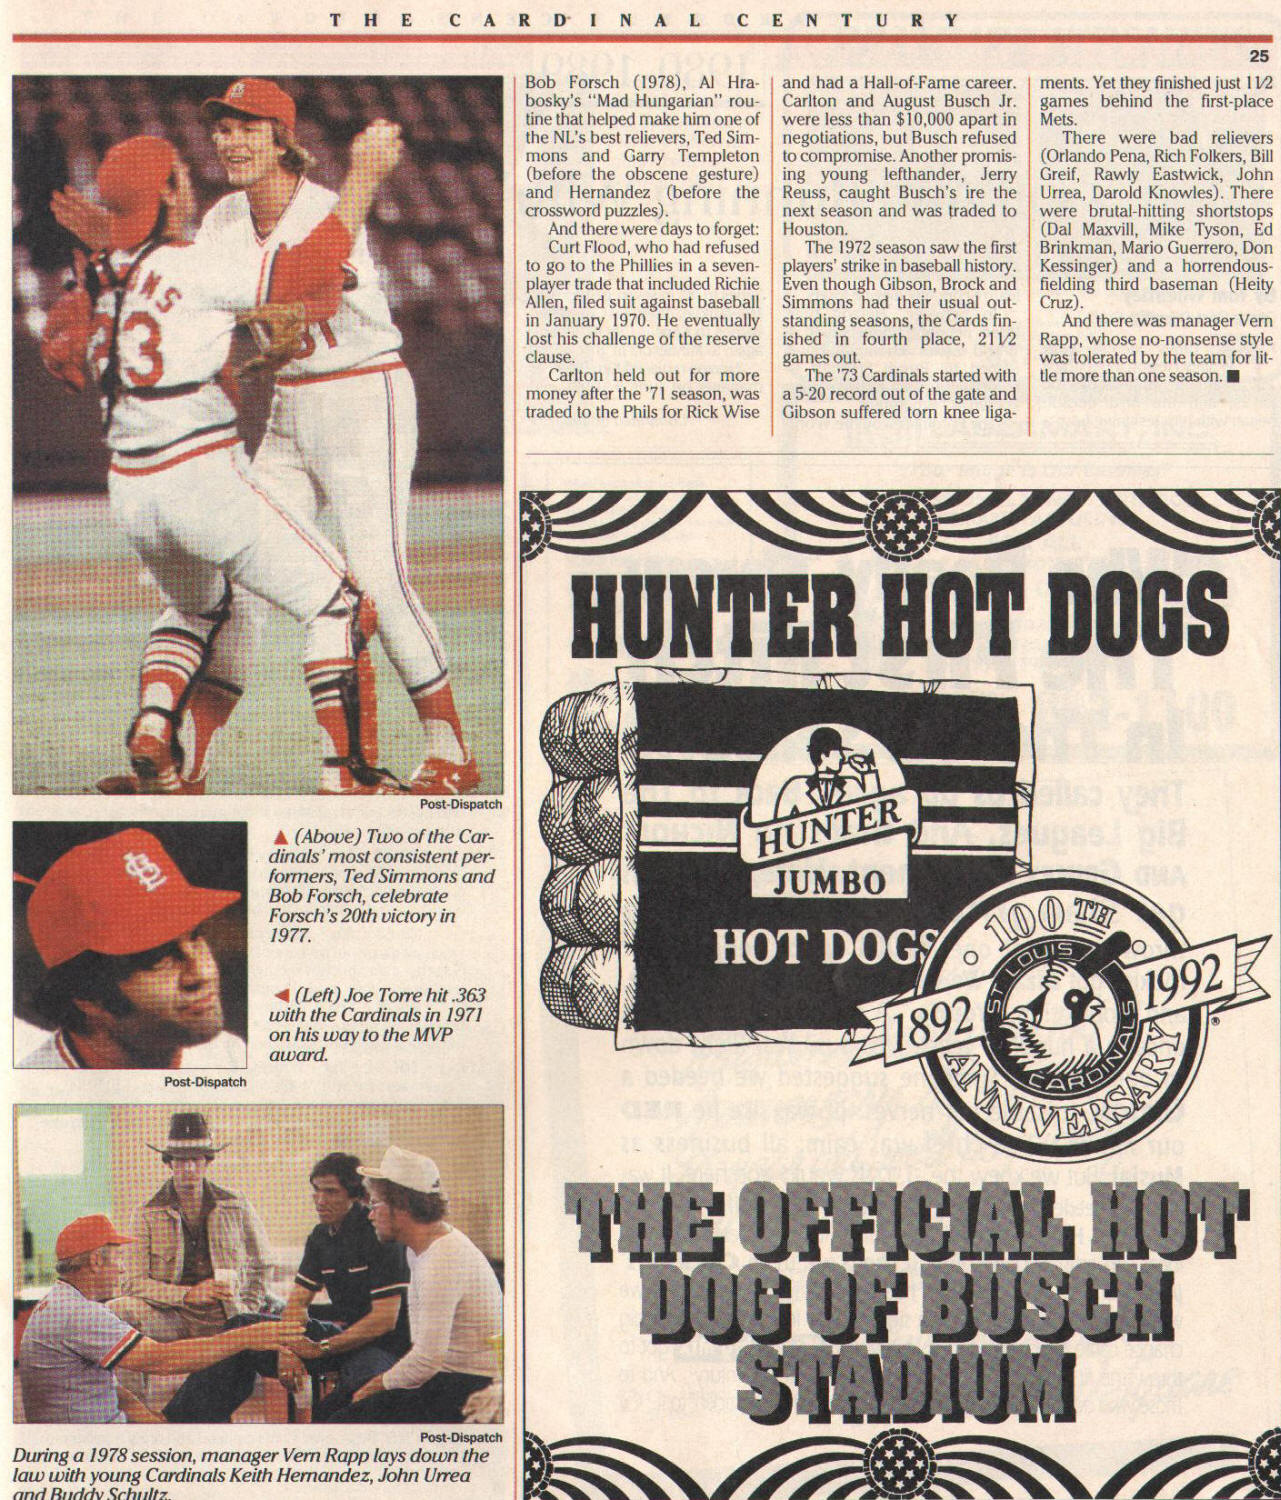 1988 St. Louis Post Dispatch Magazine - Ozzie Smith (11/13)